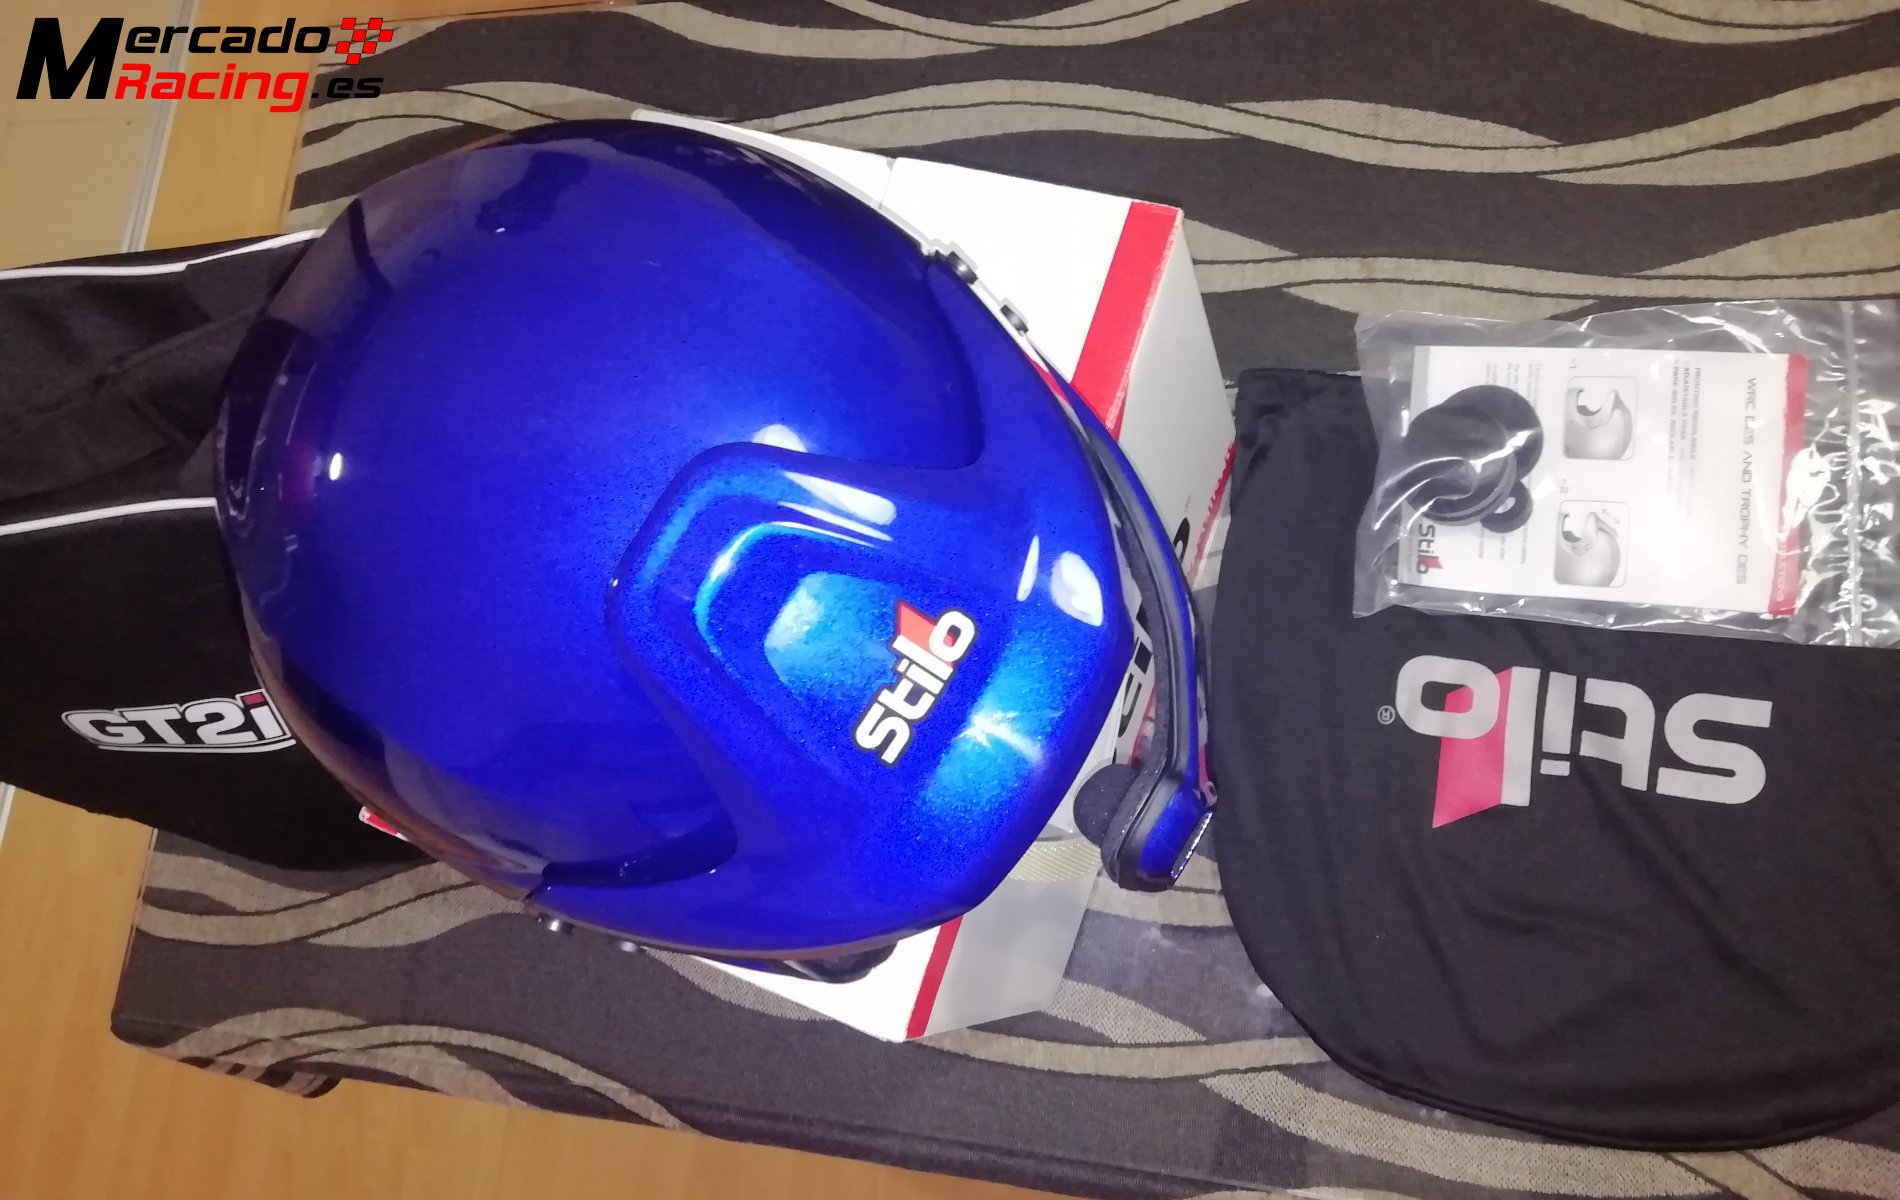 Vendo casco stilo wrc azul nuevo snell 2015